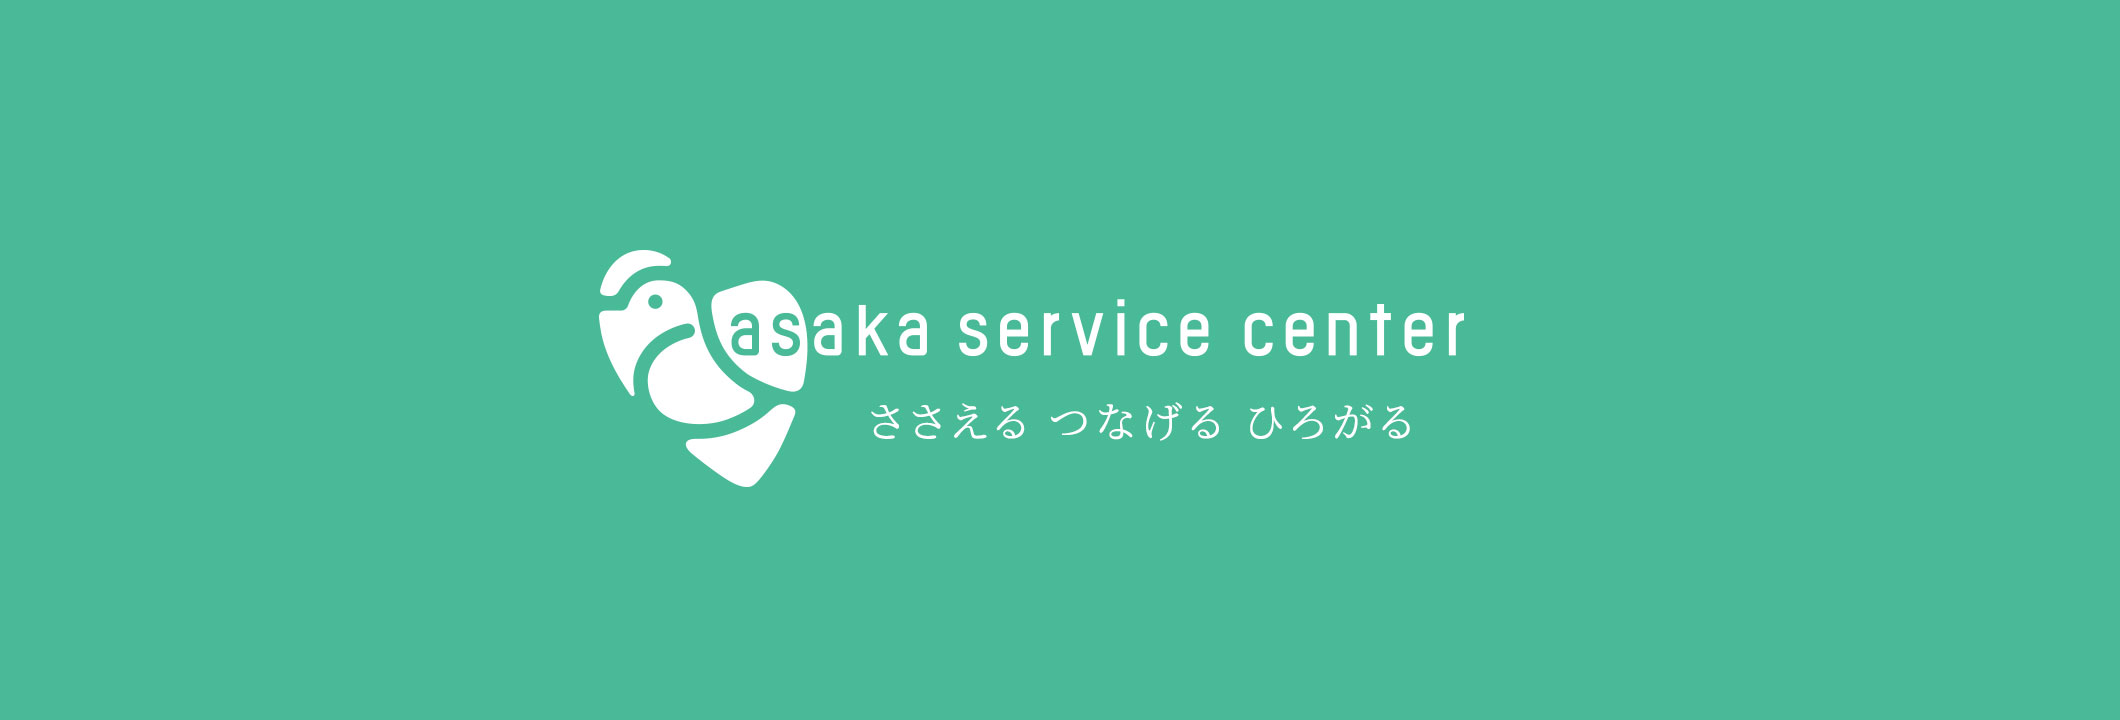 アサカサービスセンターデザインイメージ